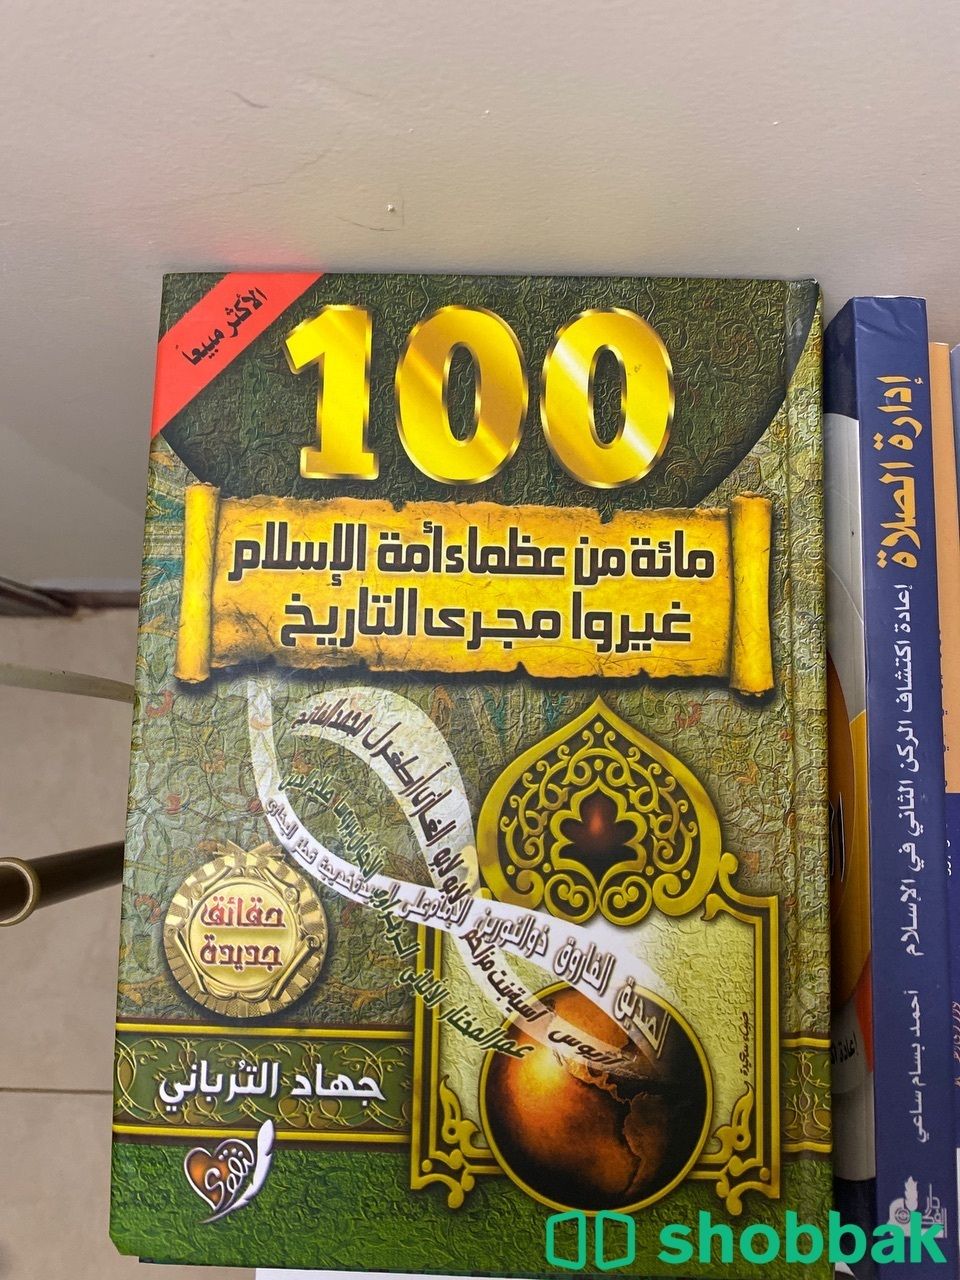 كتاب مائه من عظماء الامة الاسلاميه غيرو مجرى التاريخ  Shobbak Saudi Arabia